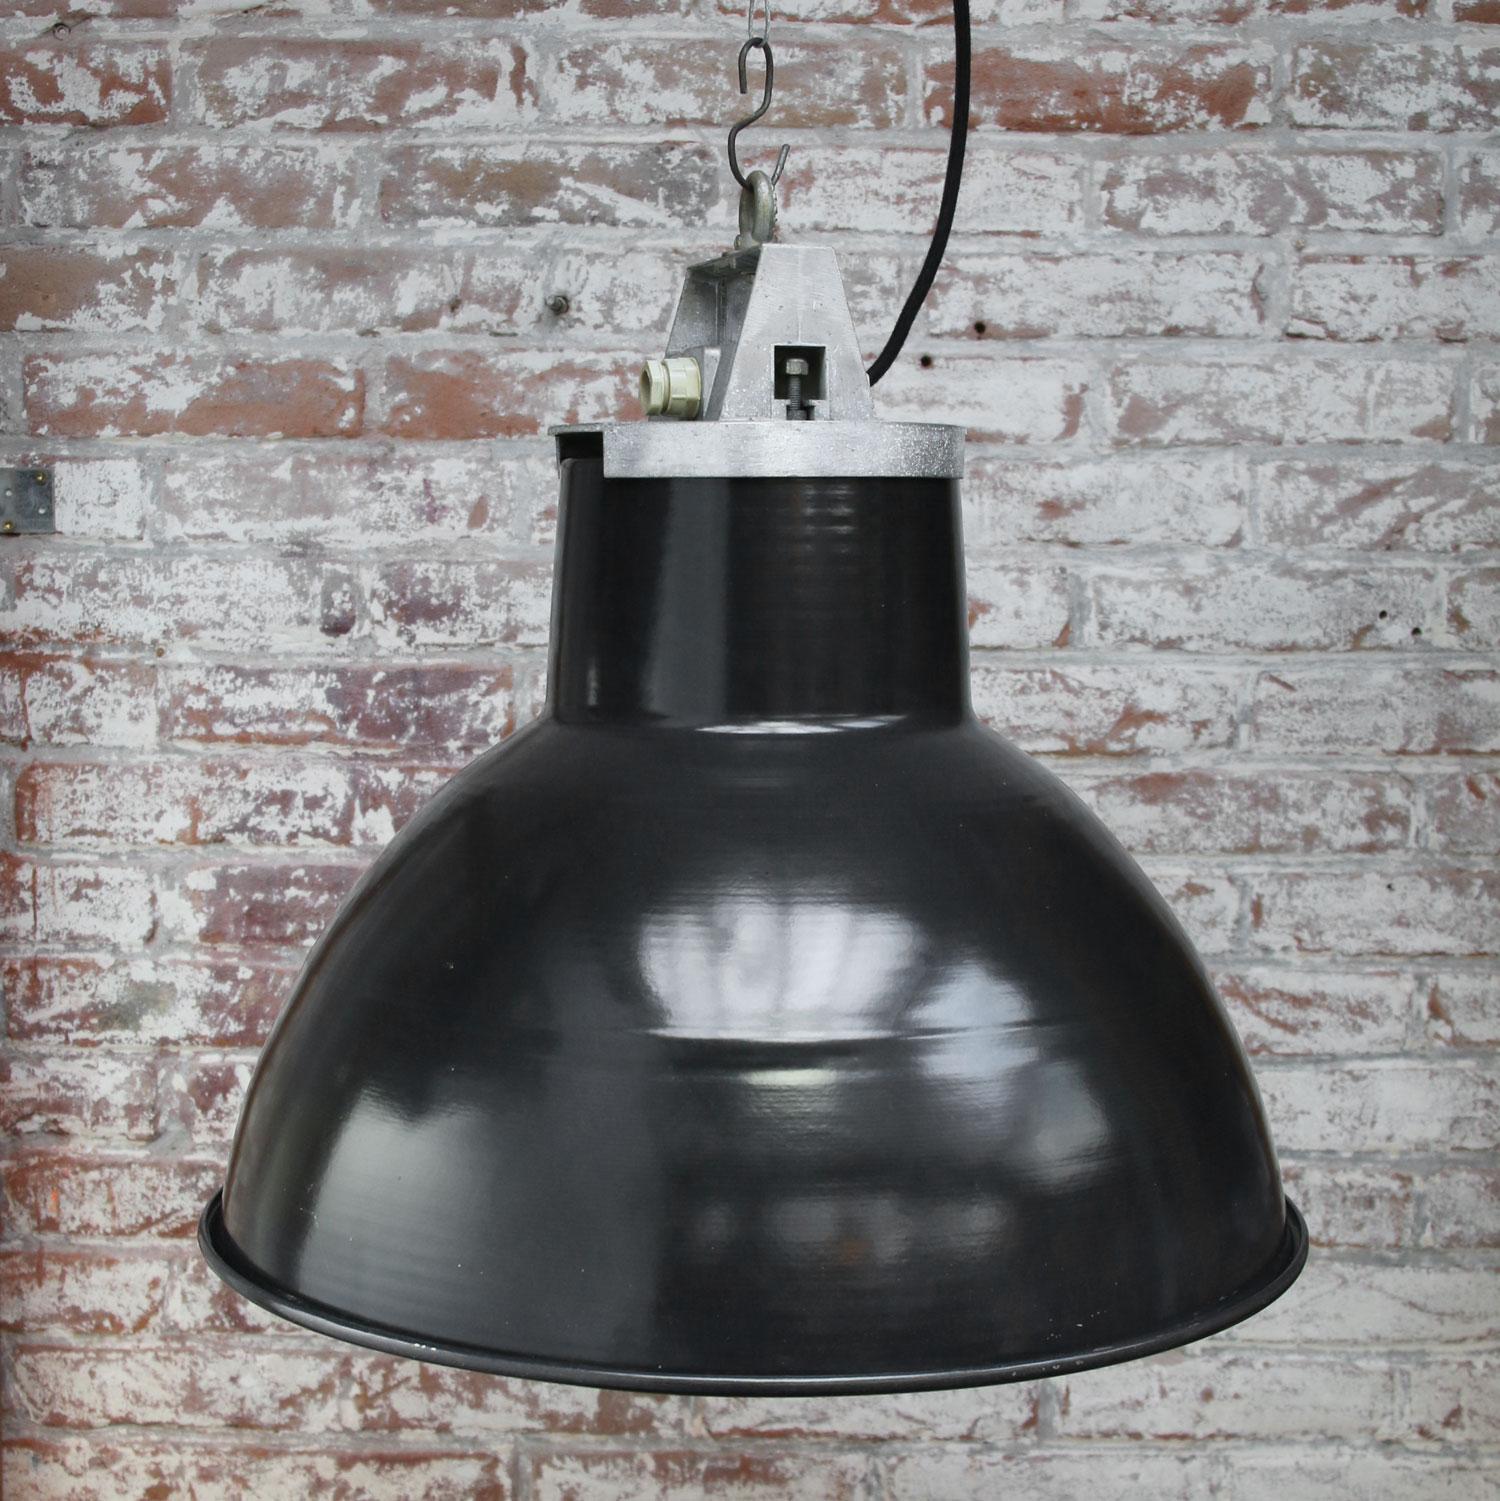 French Black Enamel Vintage Industrial Pendant Lights